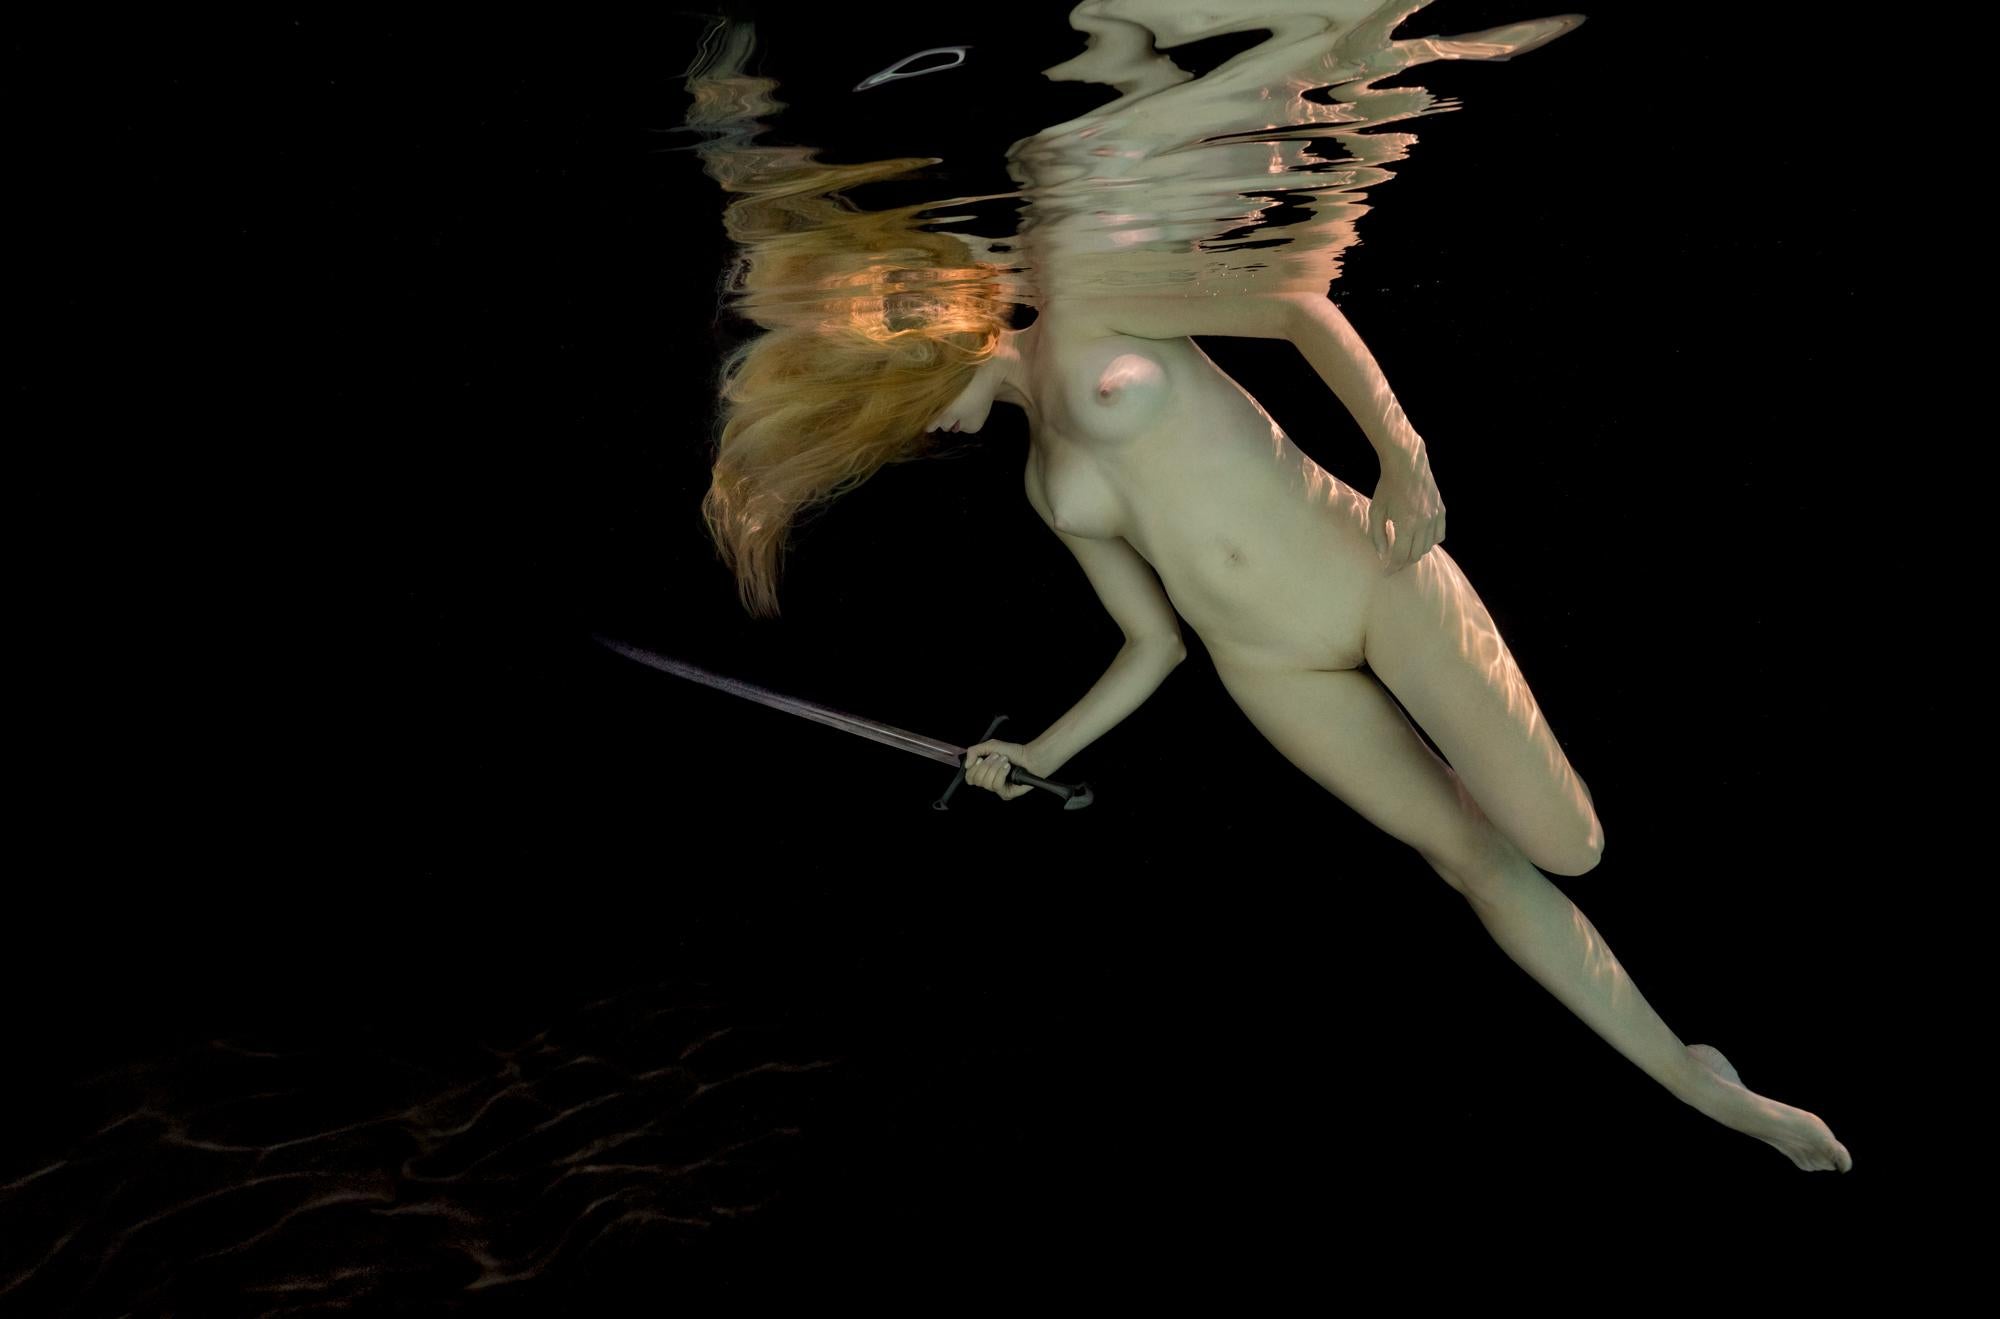 Alex Sher Nude Photograph – Unterwasser-Nacktfotografie – Archivalistischer Pigmentdruck